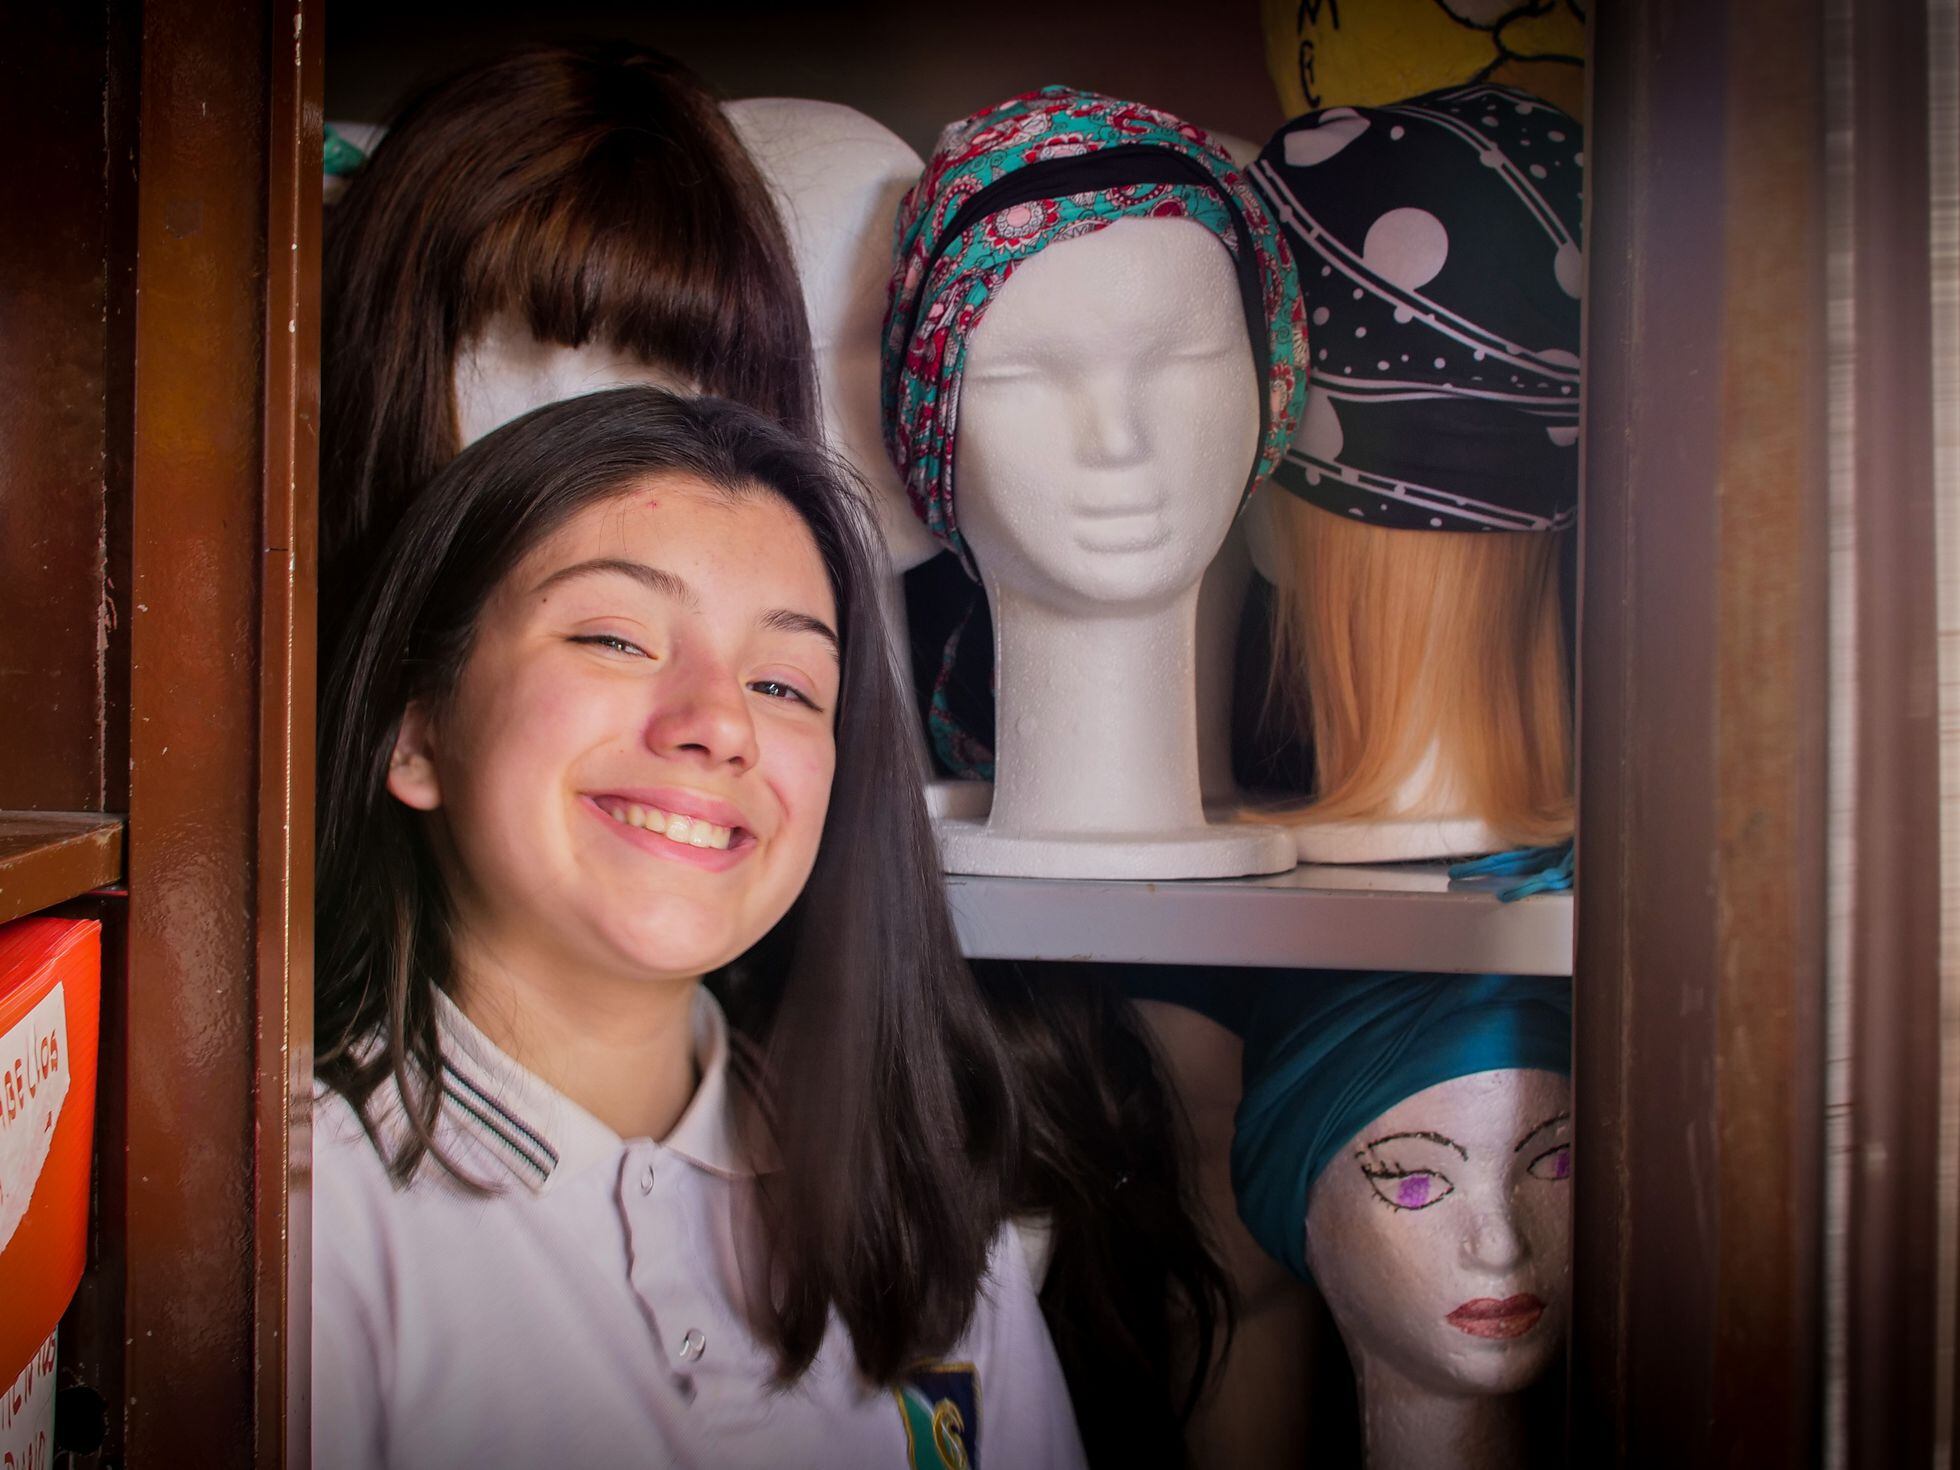 La adolescente que creó fábrica de pelucas para ayudar a pacientes de cáncer y superar el duelo | América Futura | EL PAÍS América